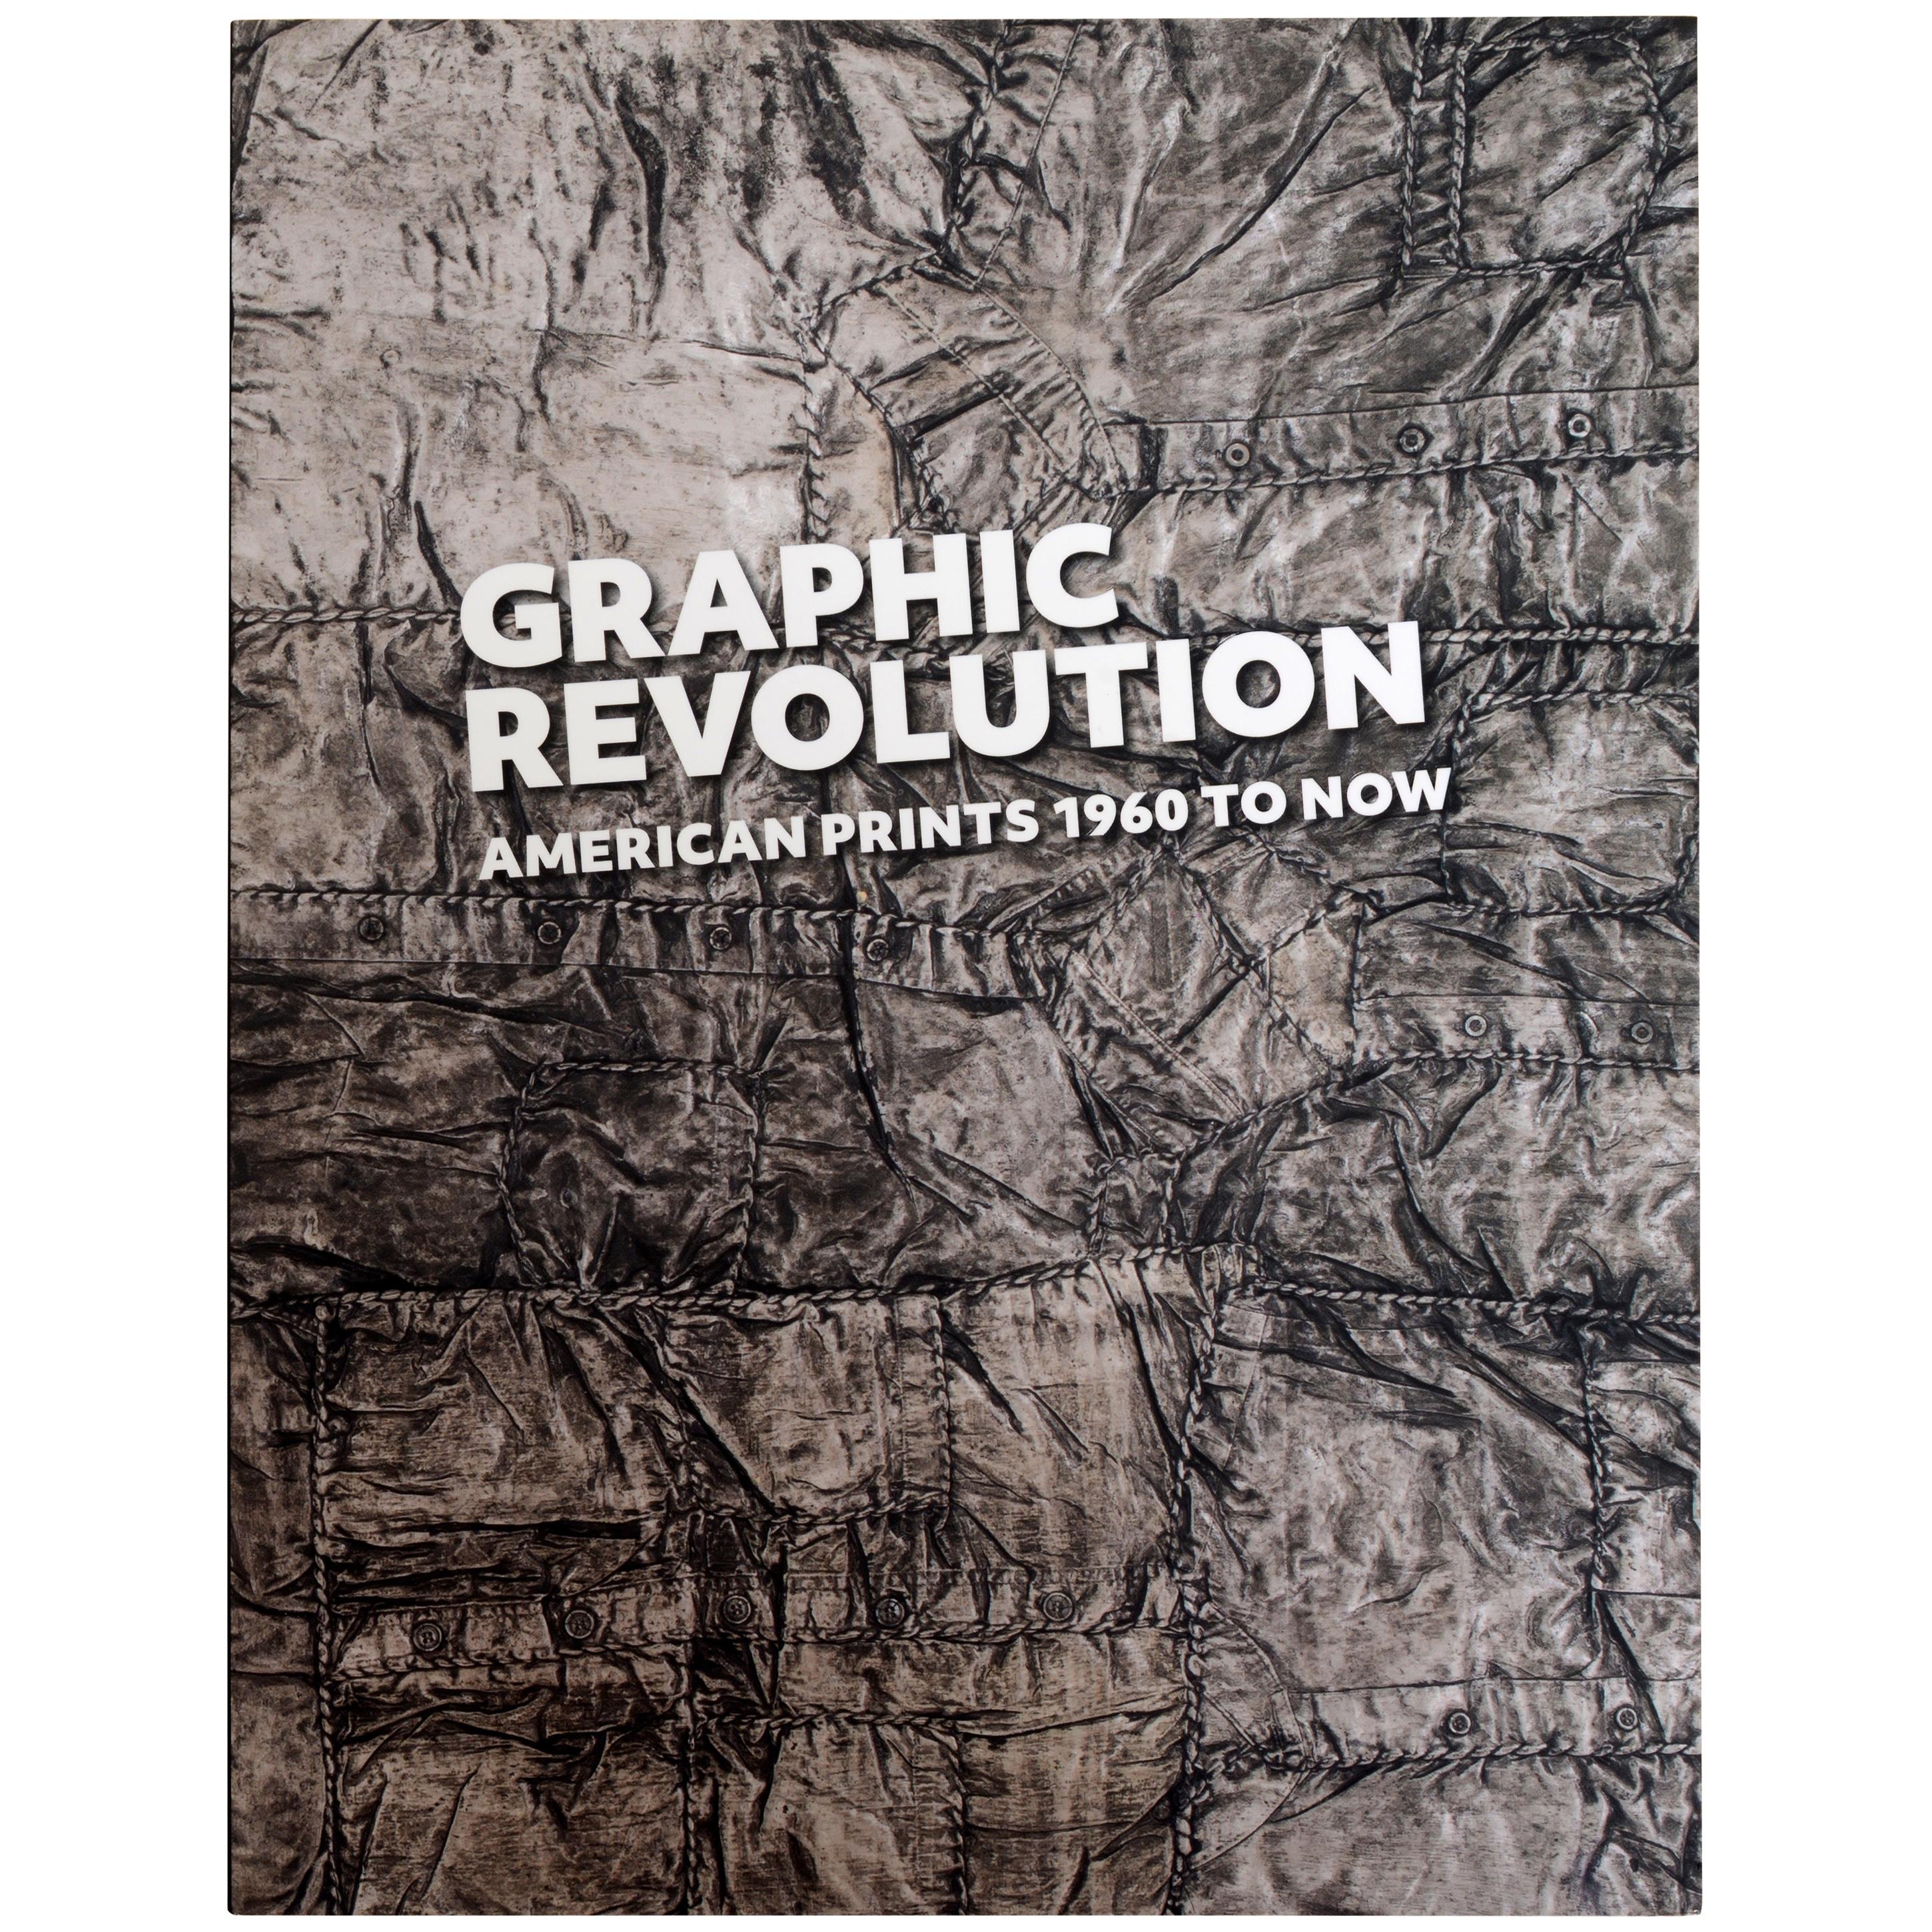 Graphic Revolution American Prints 1960 to Now von Elizabeth Wyckoff, 1. Hrsg.